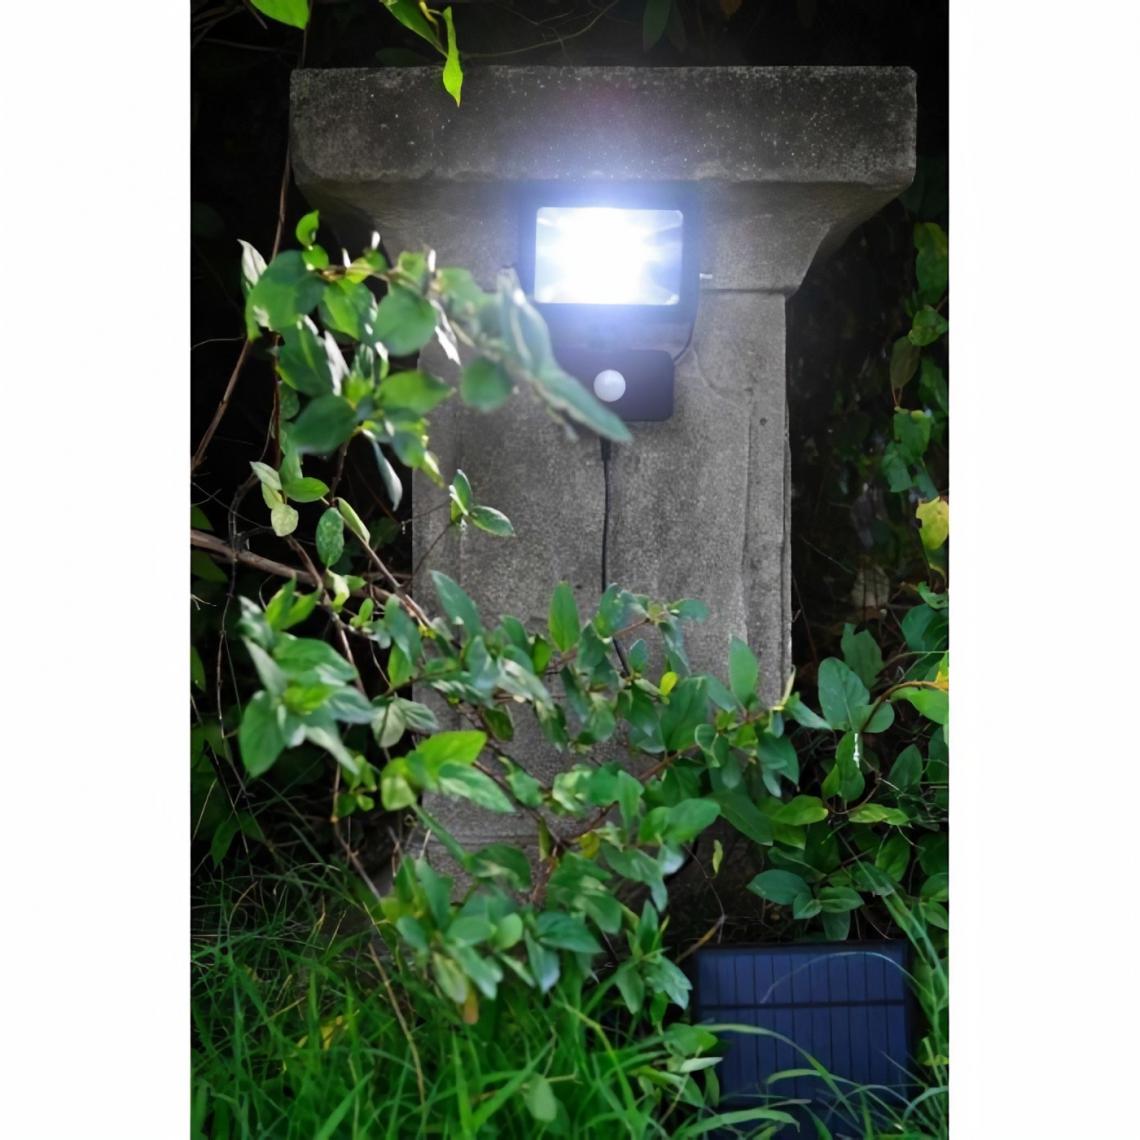 Blachere Illumination - Lampe solaire avec détecteur de mouvements - Blanc - L 15,9 x P 6 x H 16,5 cm - Lampes portatives sans fil